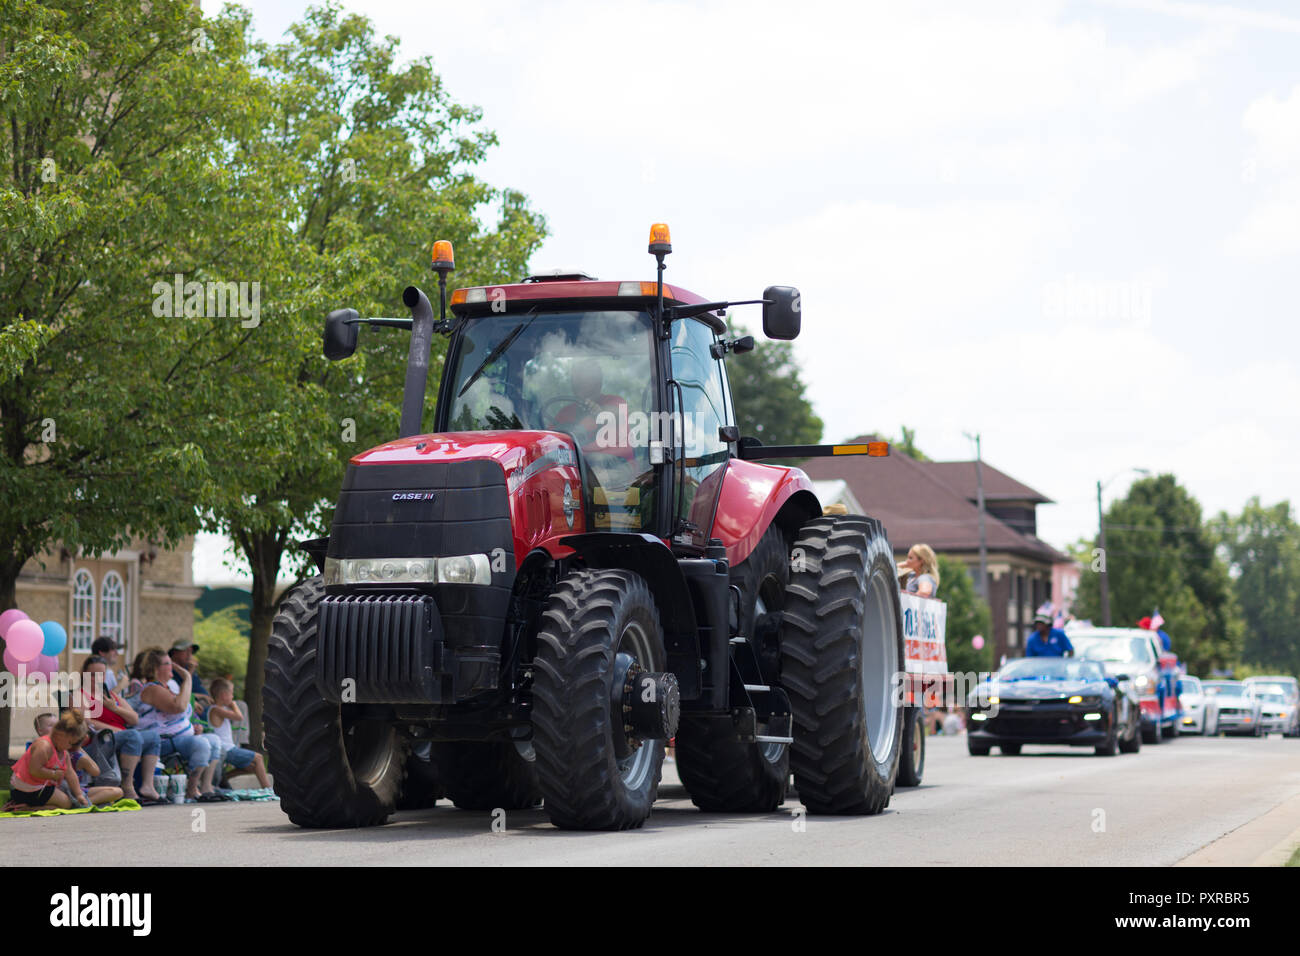 Kokomo, Indiana, USA - 30 juin 2018 : Haynes Apperson Parade, un grand tracteur Case IH Magnum rouge tirant une charrette en descendant la route Banque D'Images